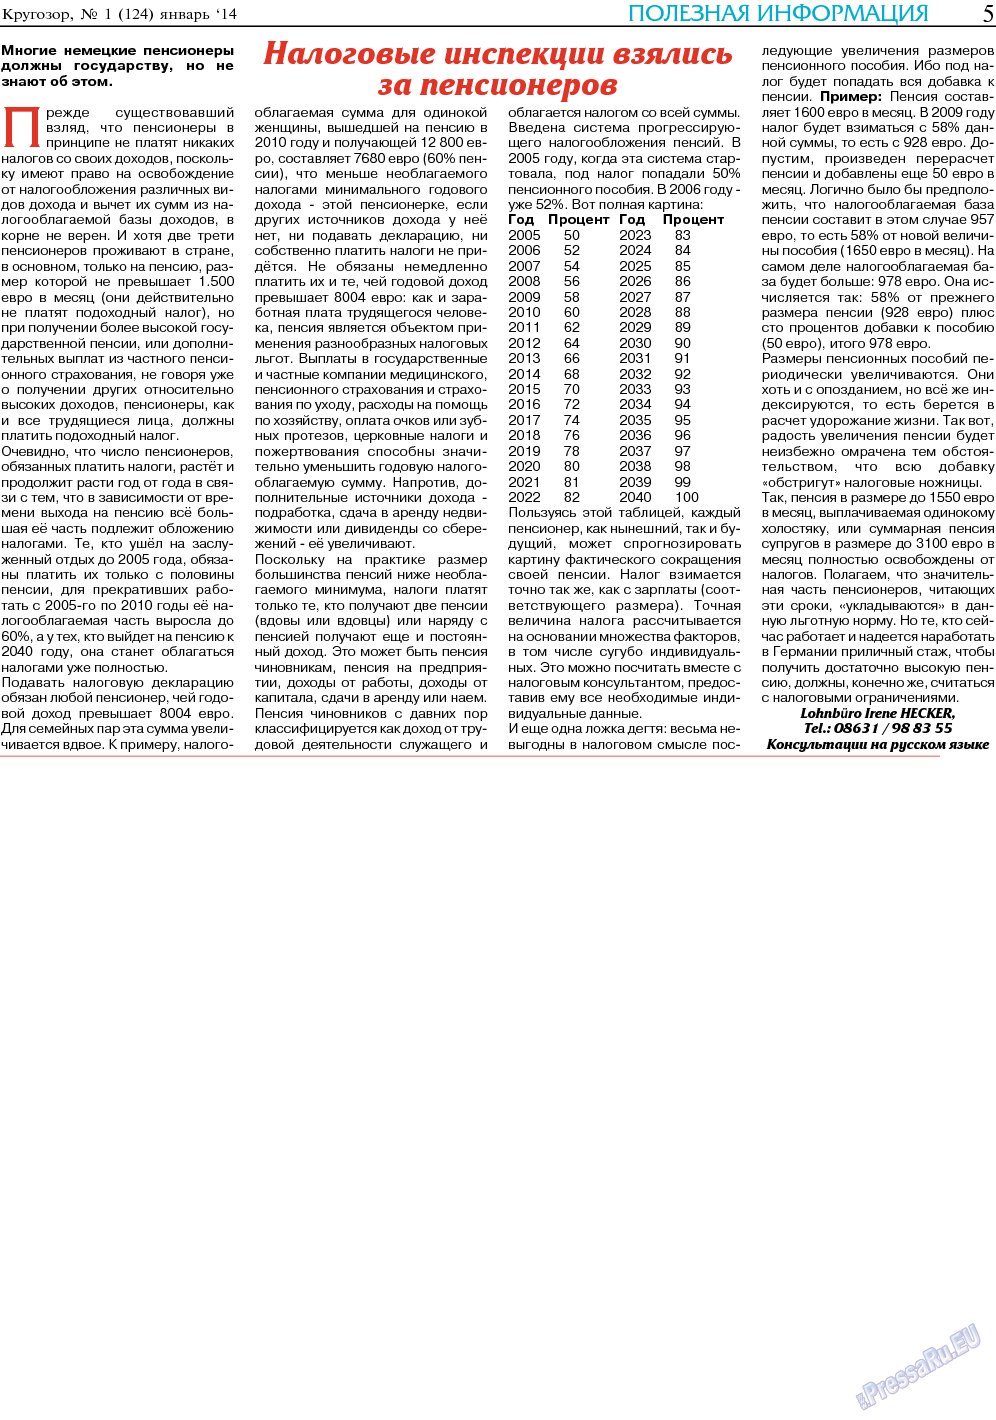 Кругозор, газета. 2014 №1 стр.5